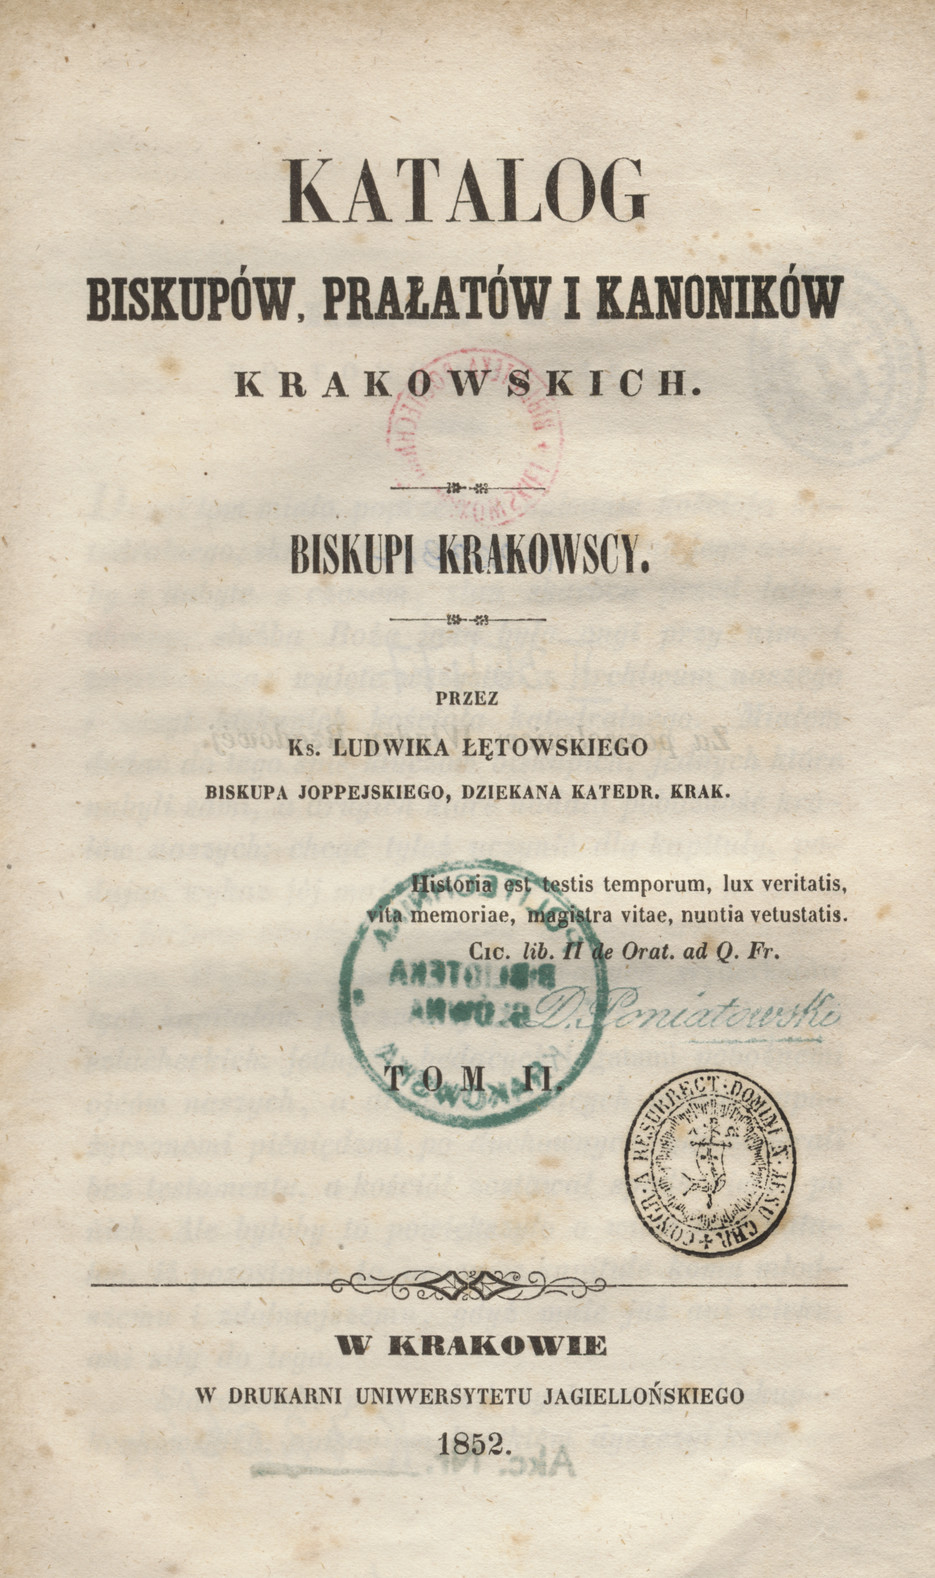 Katalog biskupów, prałatów i kanoników krakowskich. T. 2, Biskupi krakowscy